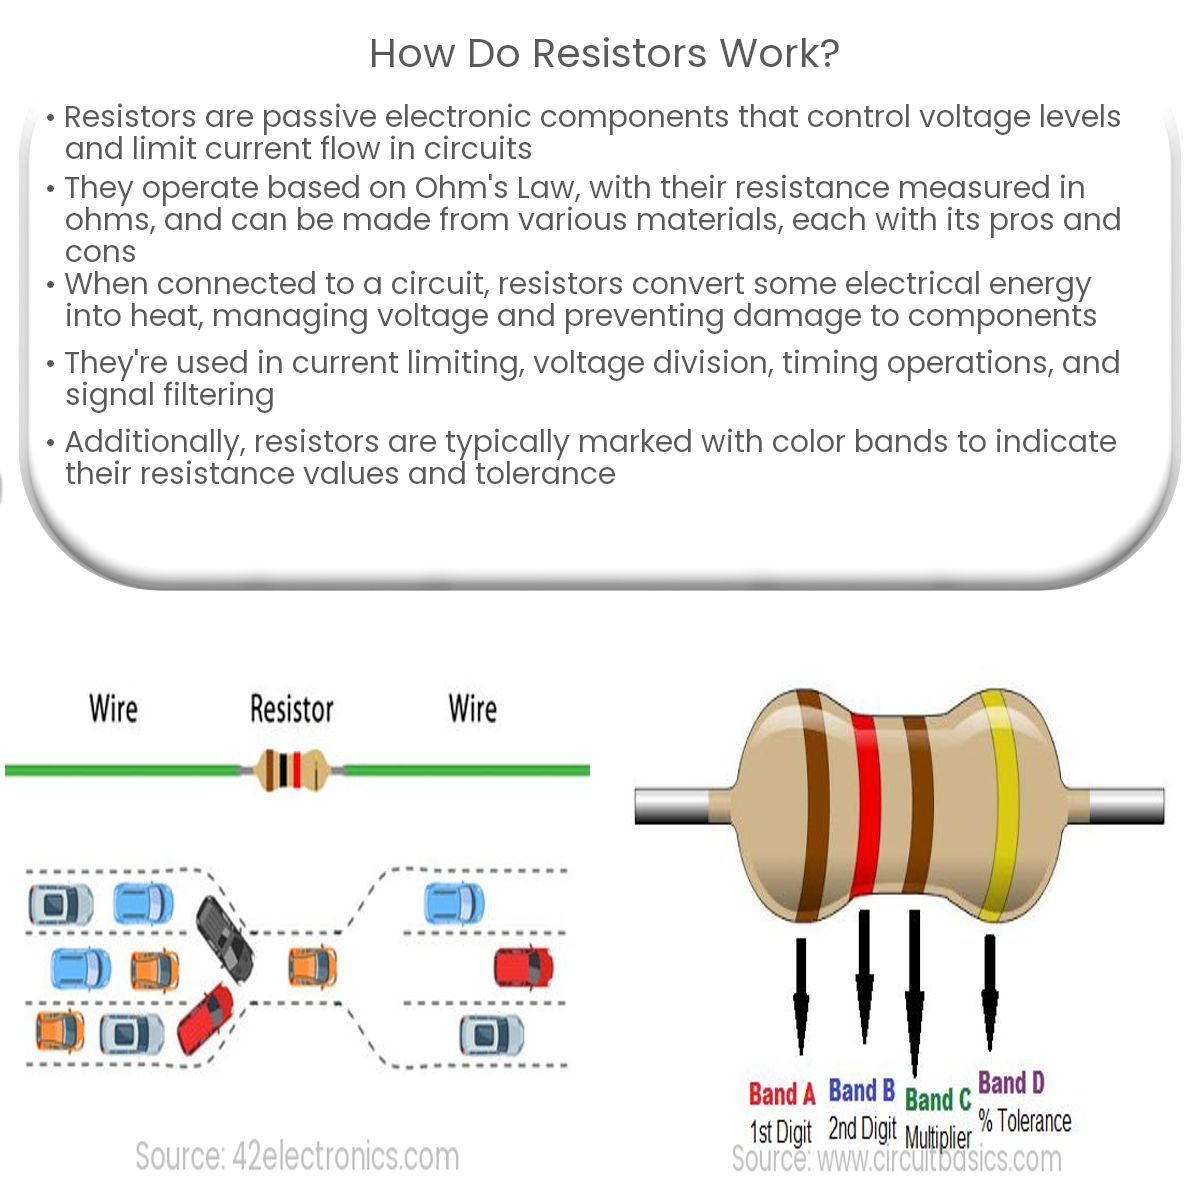 How do resistors work?